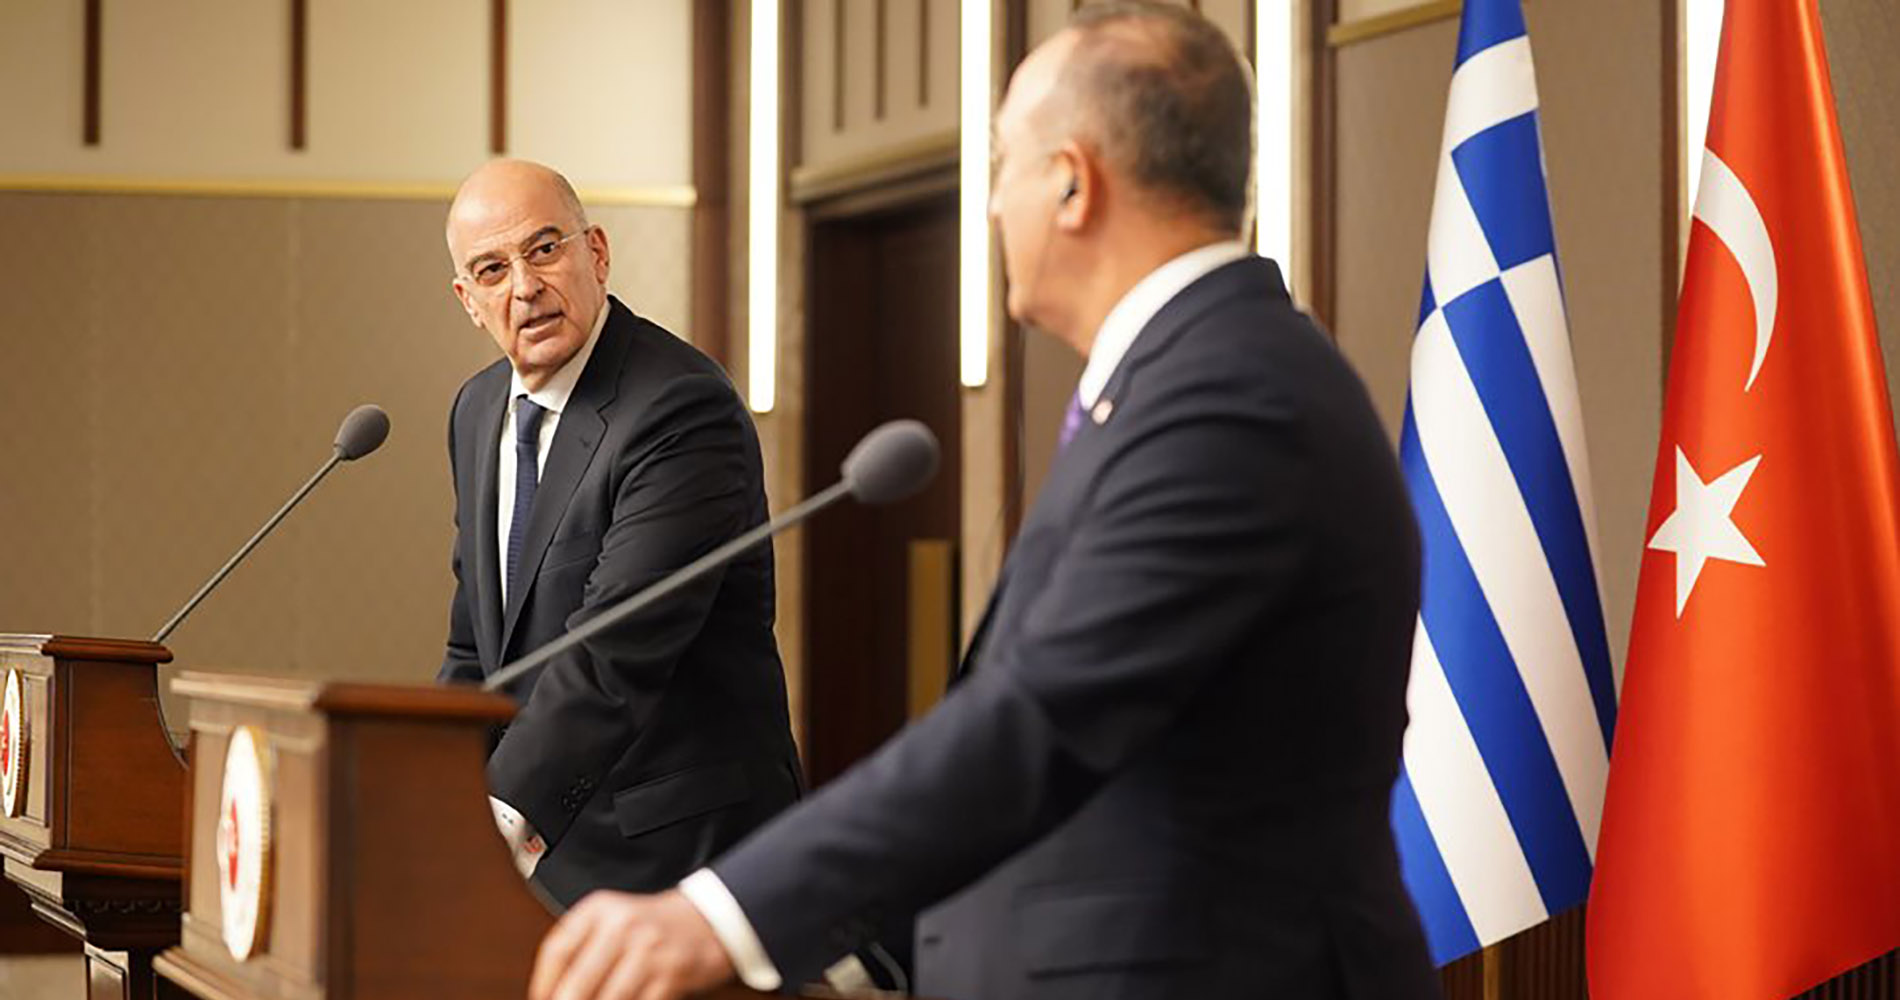 مشاهد الخلاف واضحة في المؤتمر الصحفي بين وزير خارجية اليونان ونظيره التركي